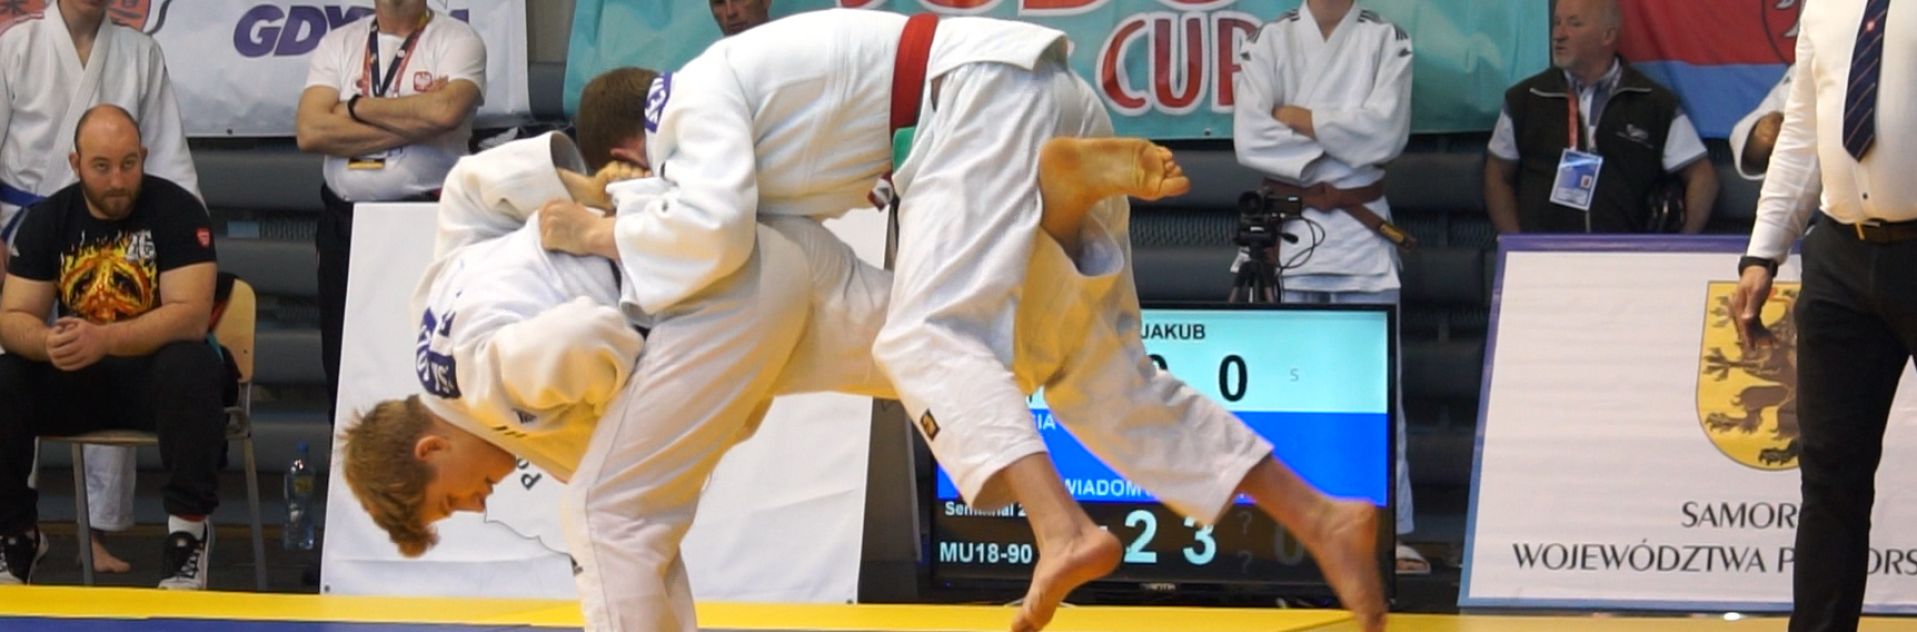 Judocy podczas zawodów 